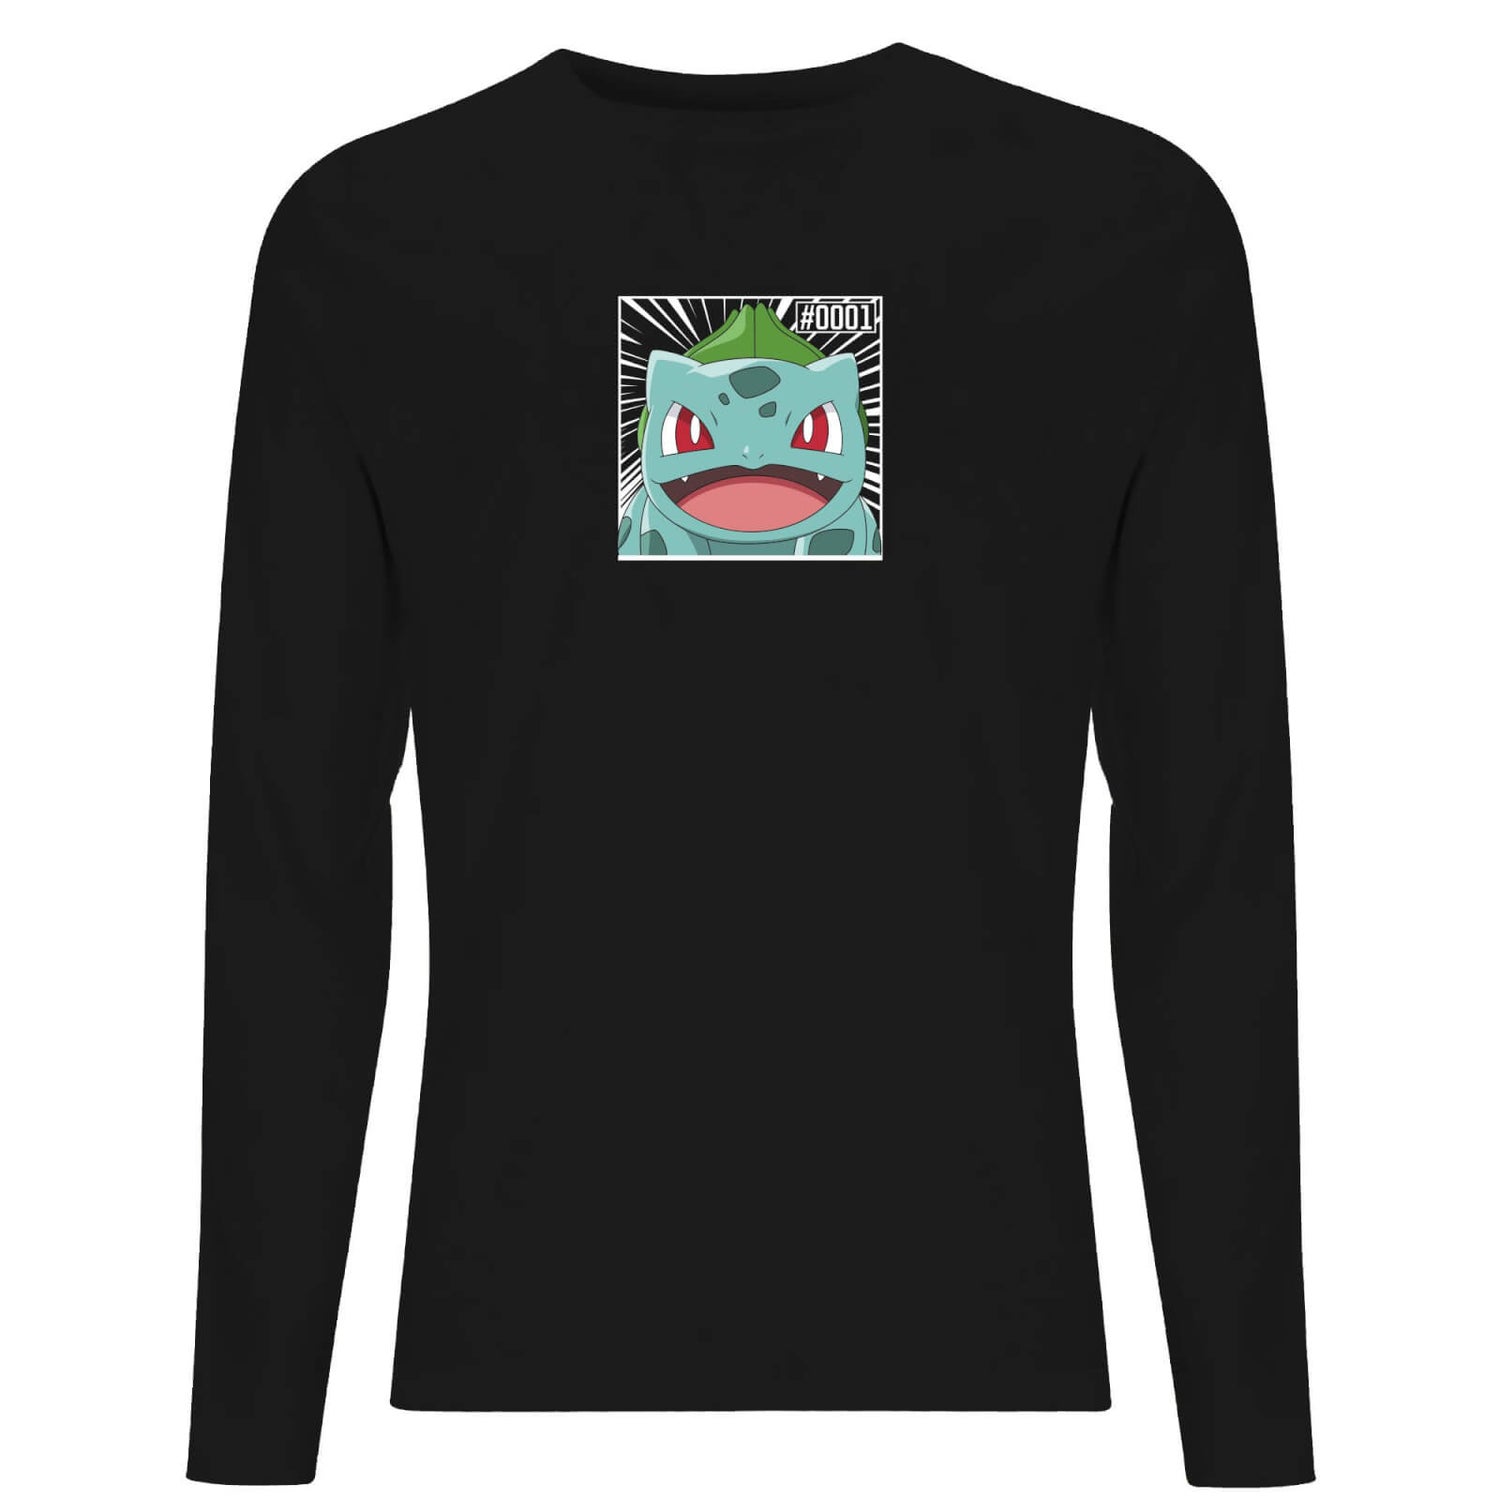 Pokémon Pokédex Bulbasaur #0001 Men's Long Sleeve T-Shirt - Black